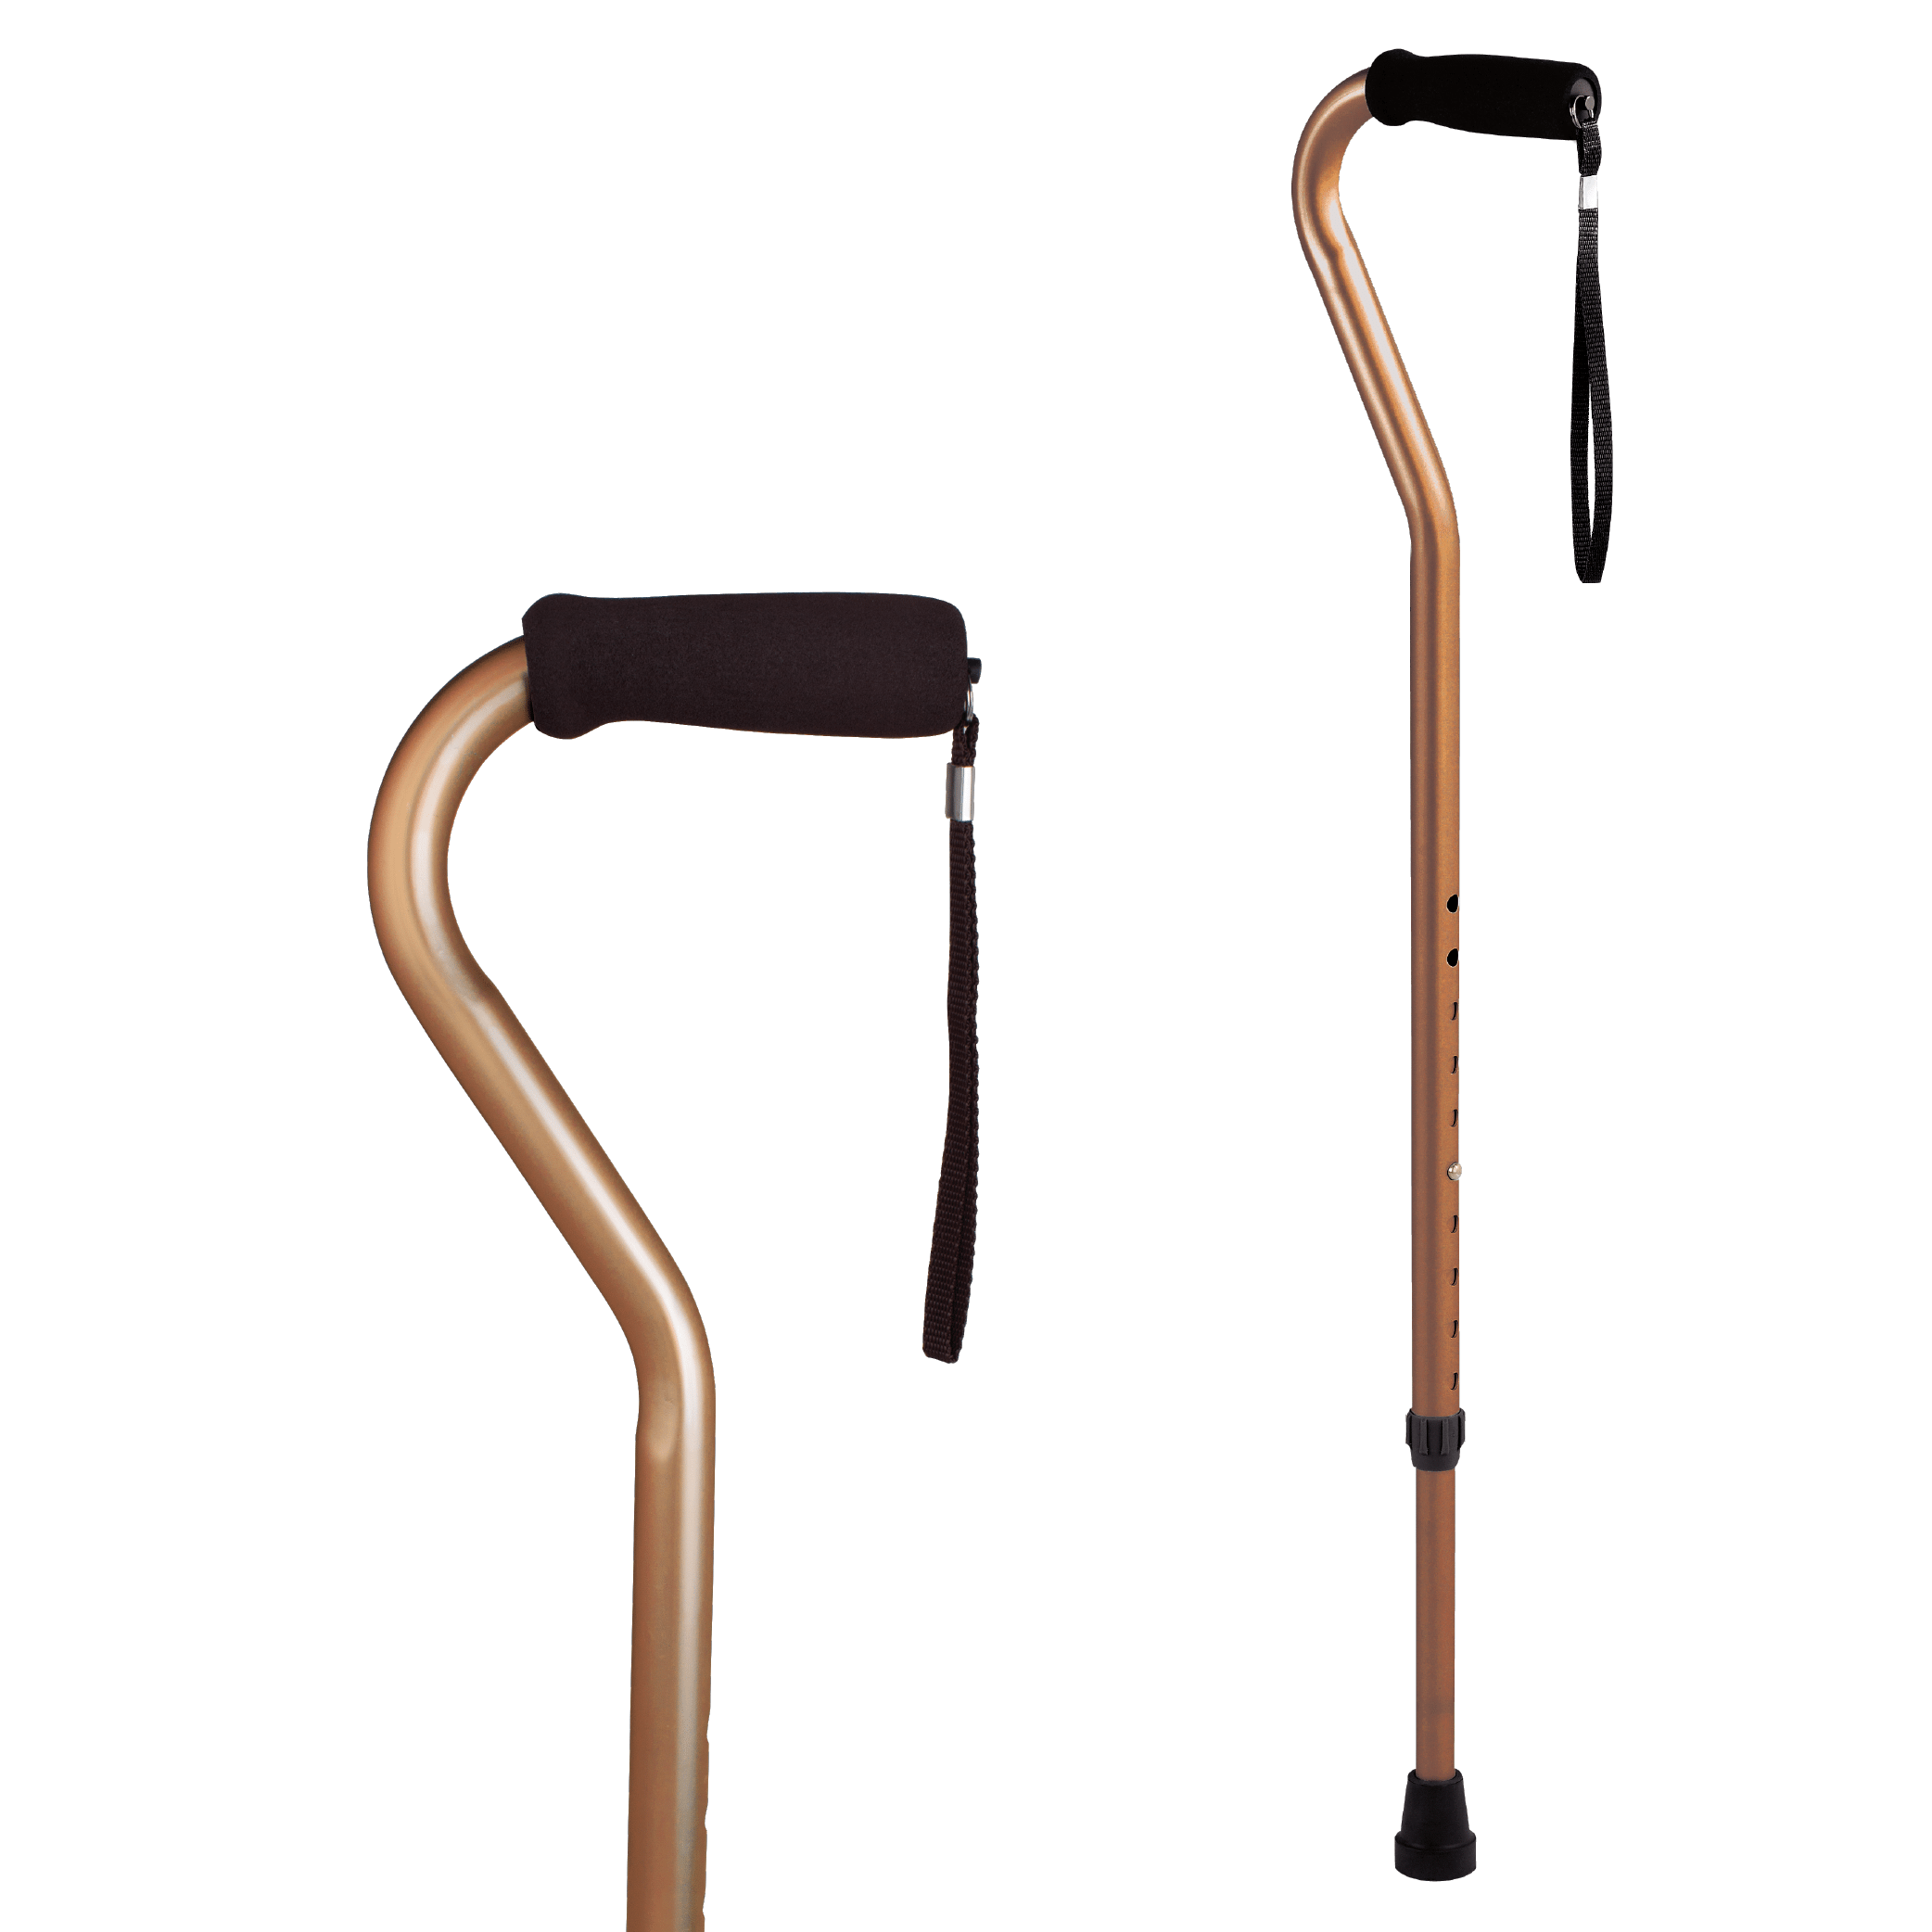 Walking stick offset handle